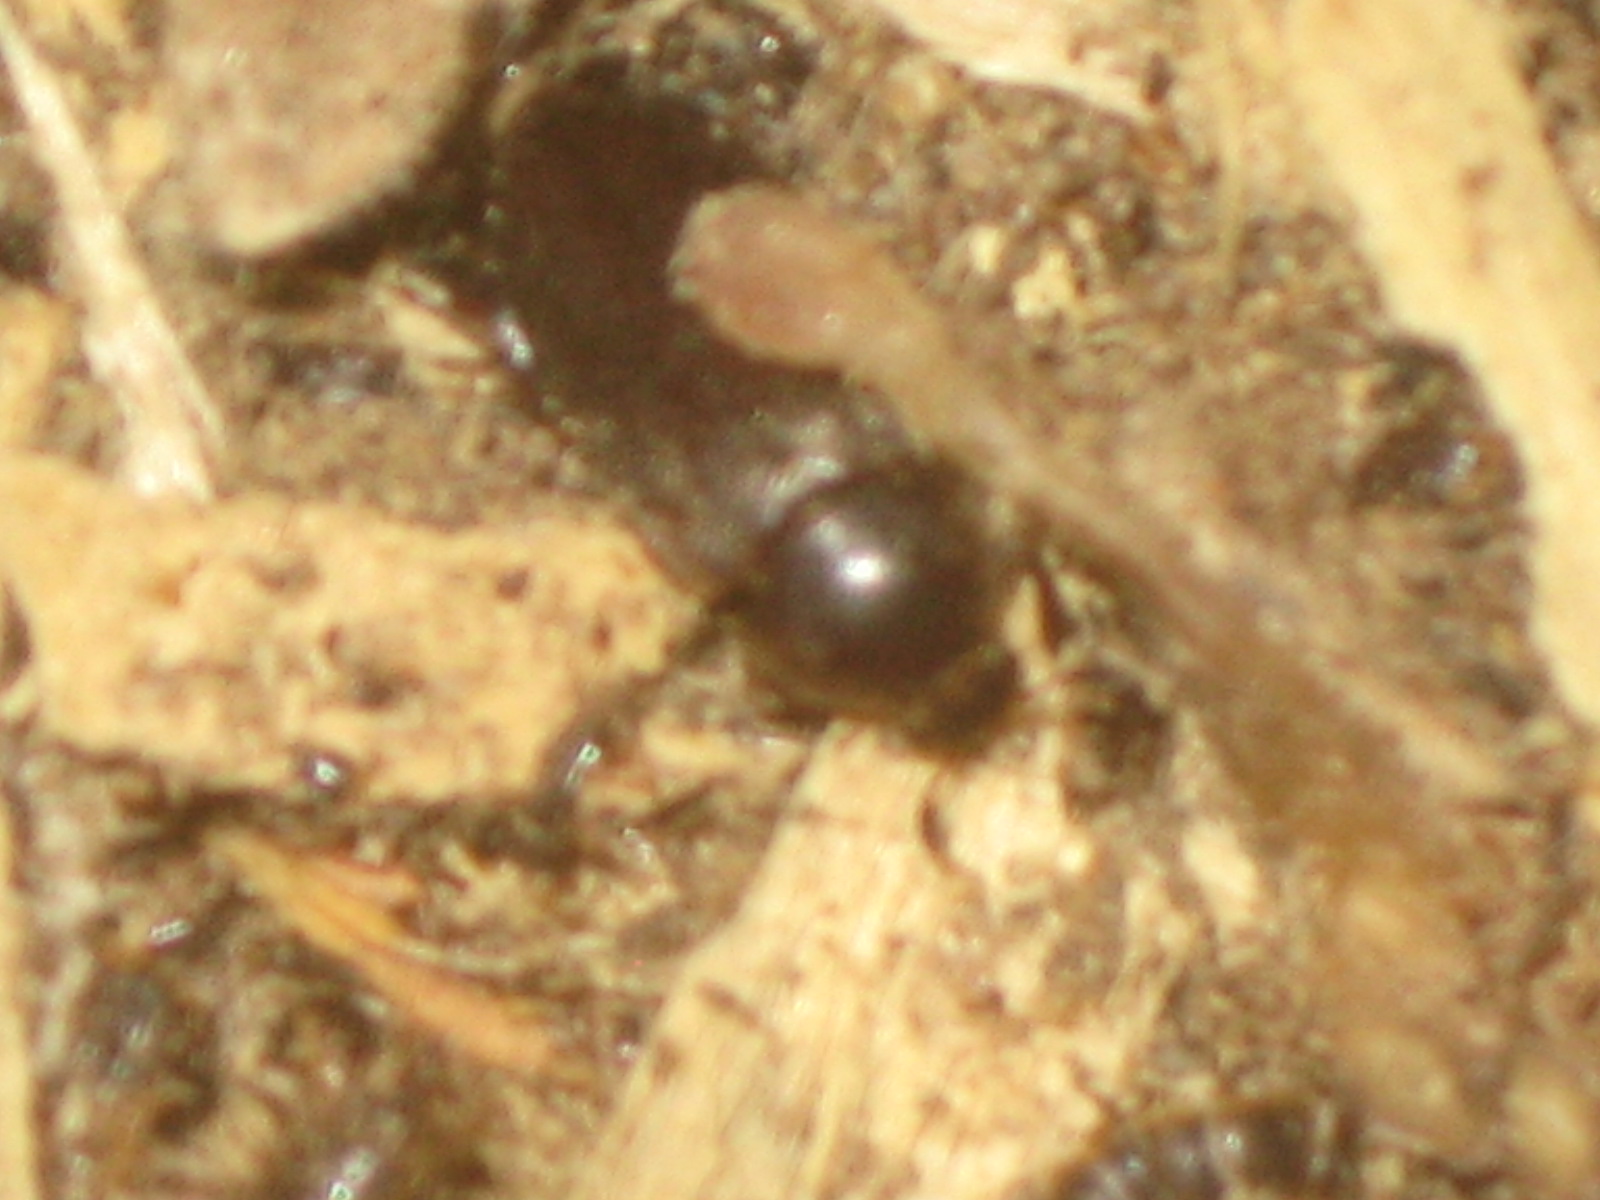 Dermestid Beetle Information, Taxidermy, European Mounts, Beetle ...